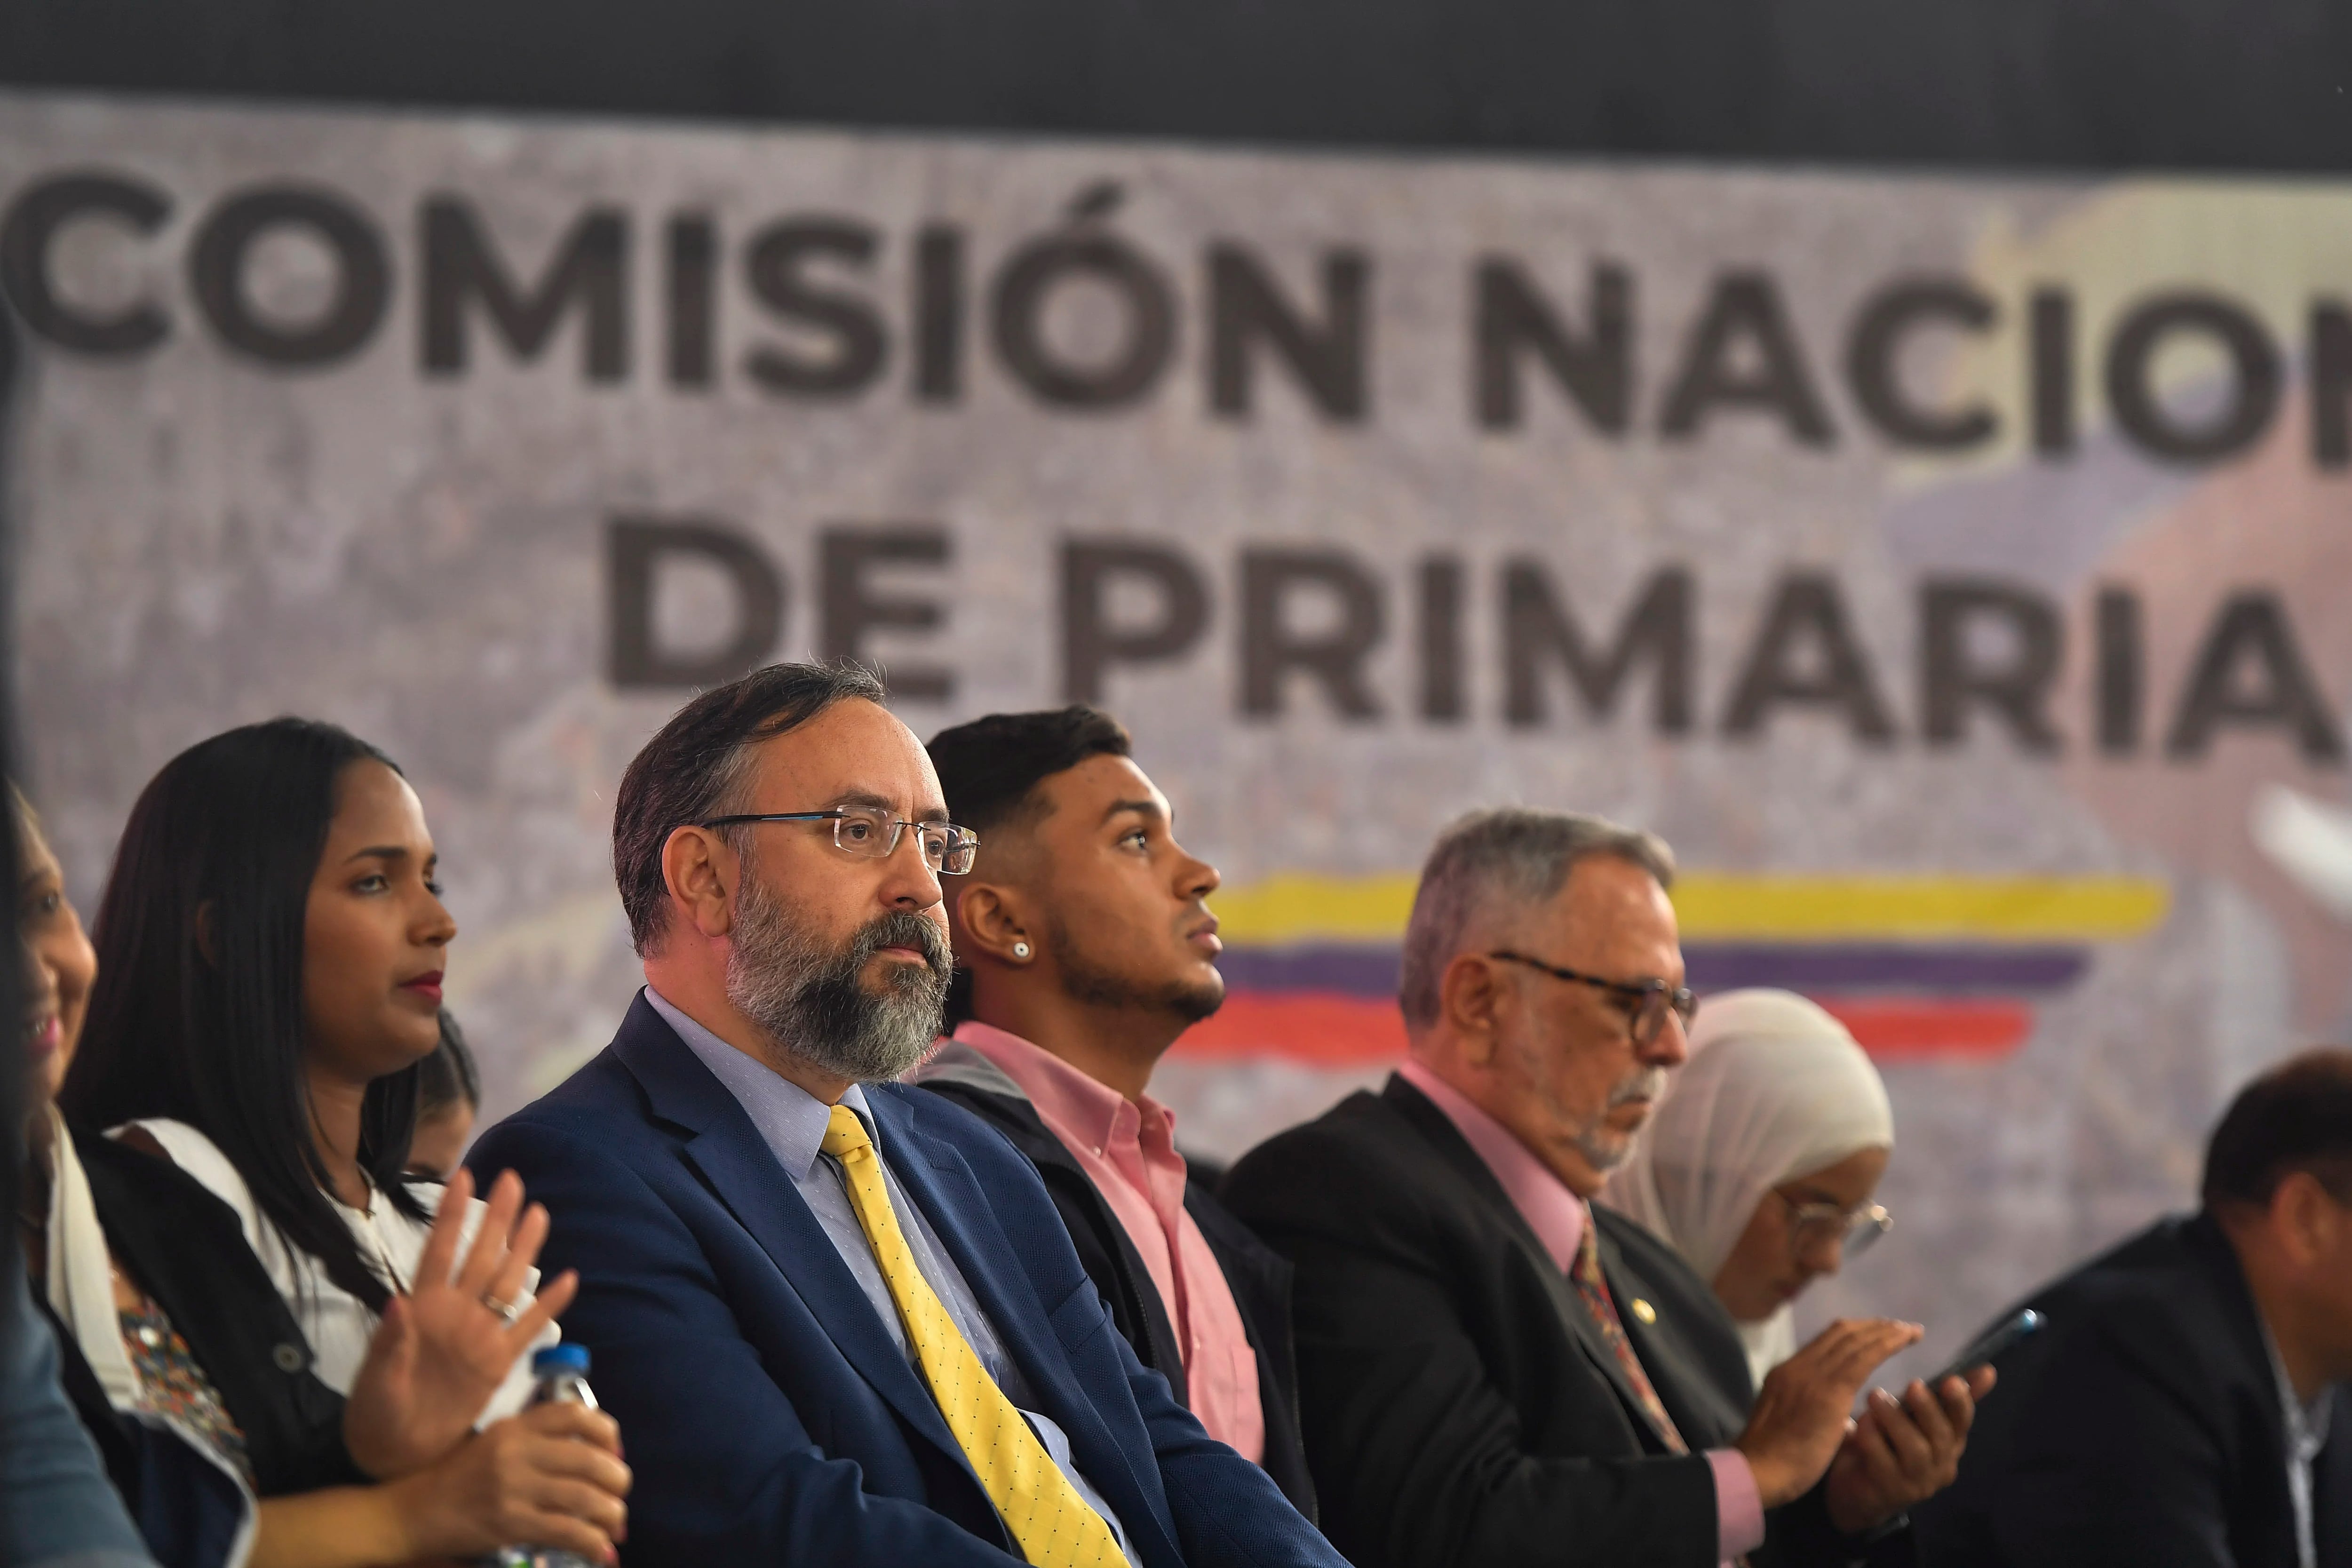 La oposición venezolana evaluará si acepta que el Consejo Electoral chavista intervenga en las elecciones primarias